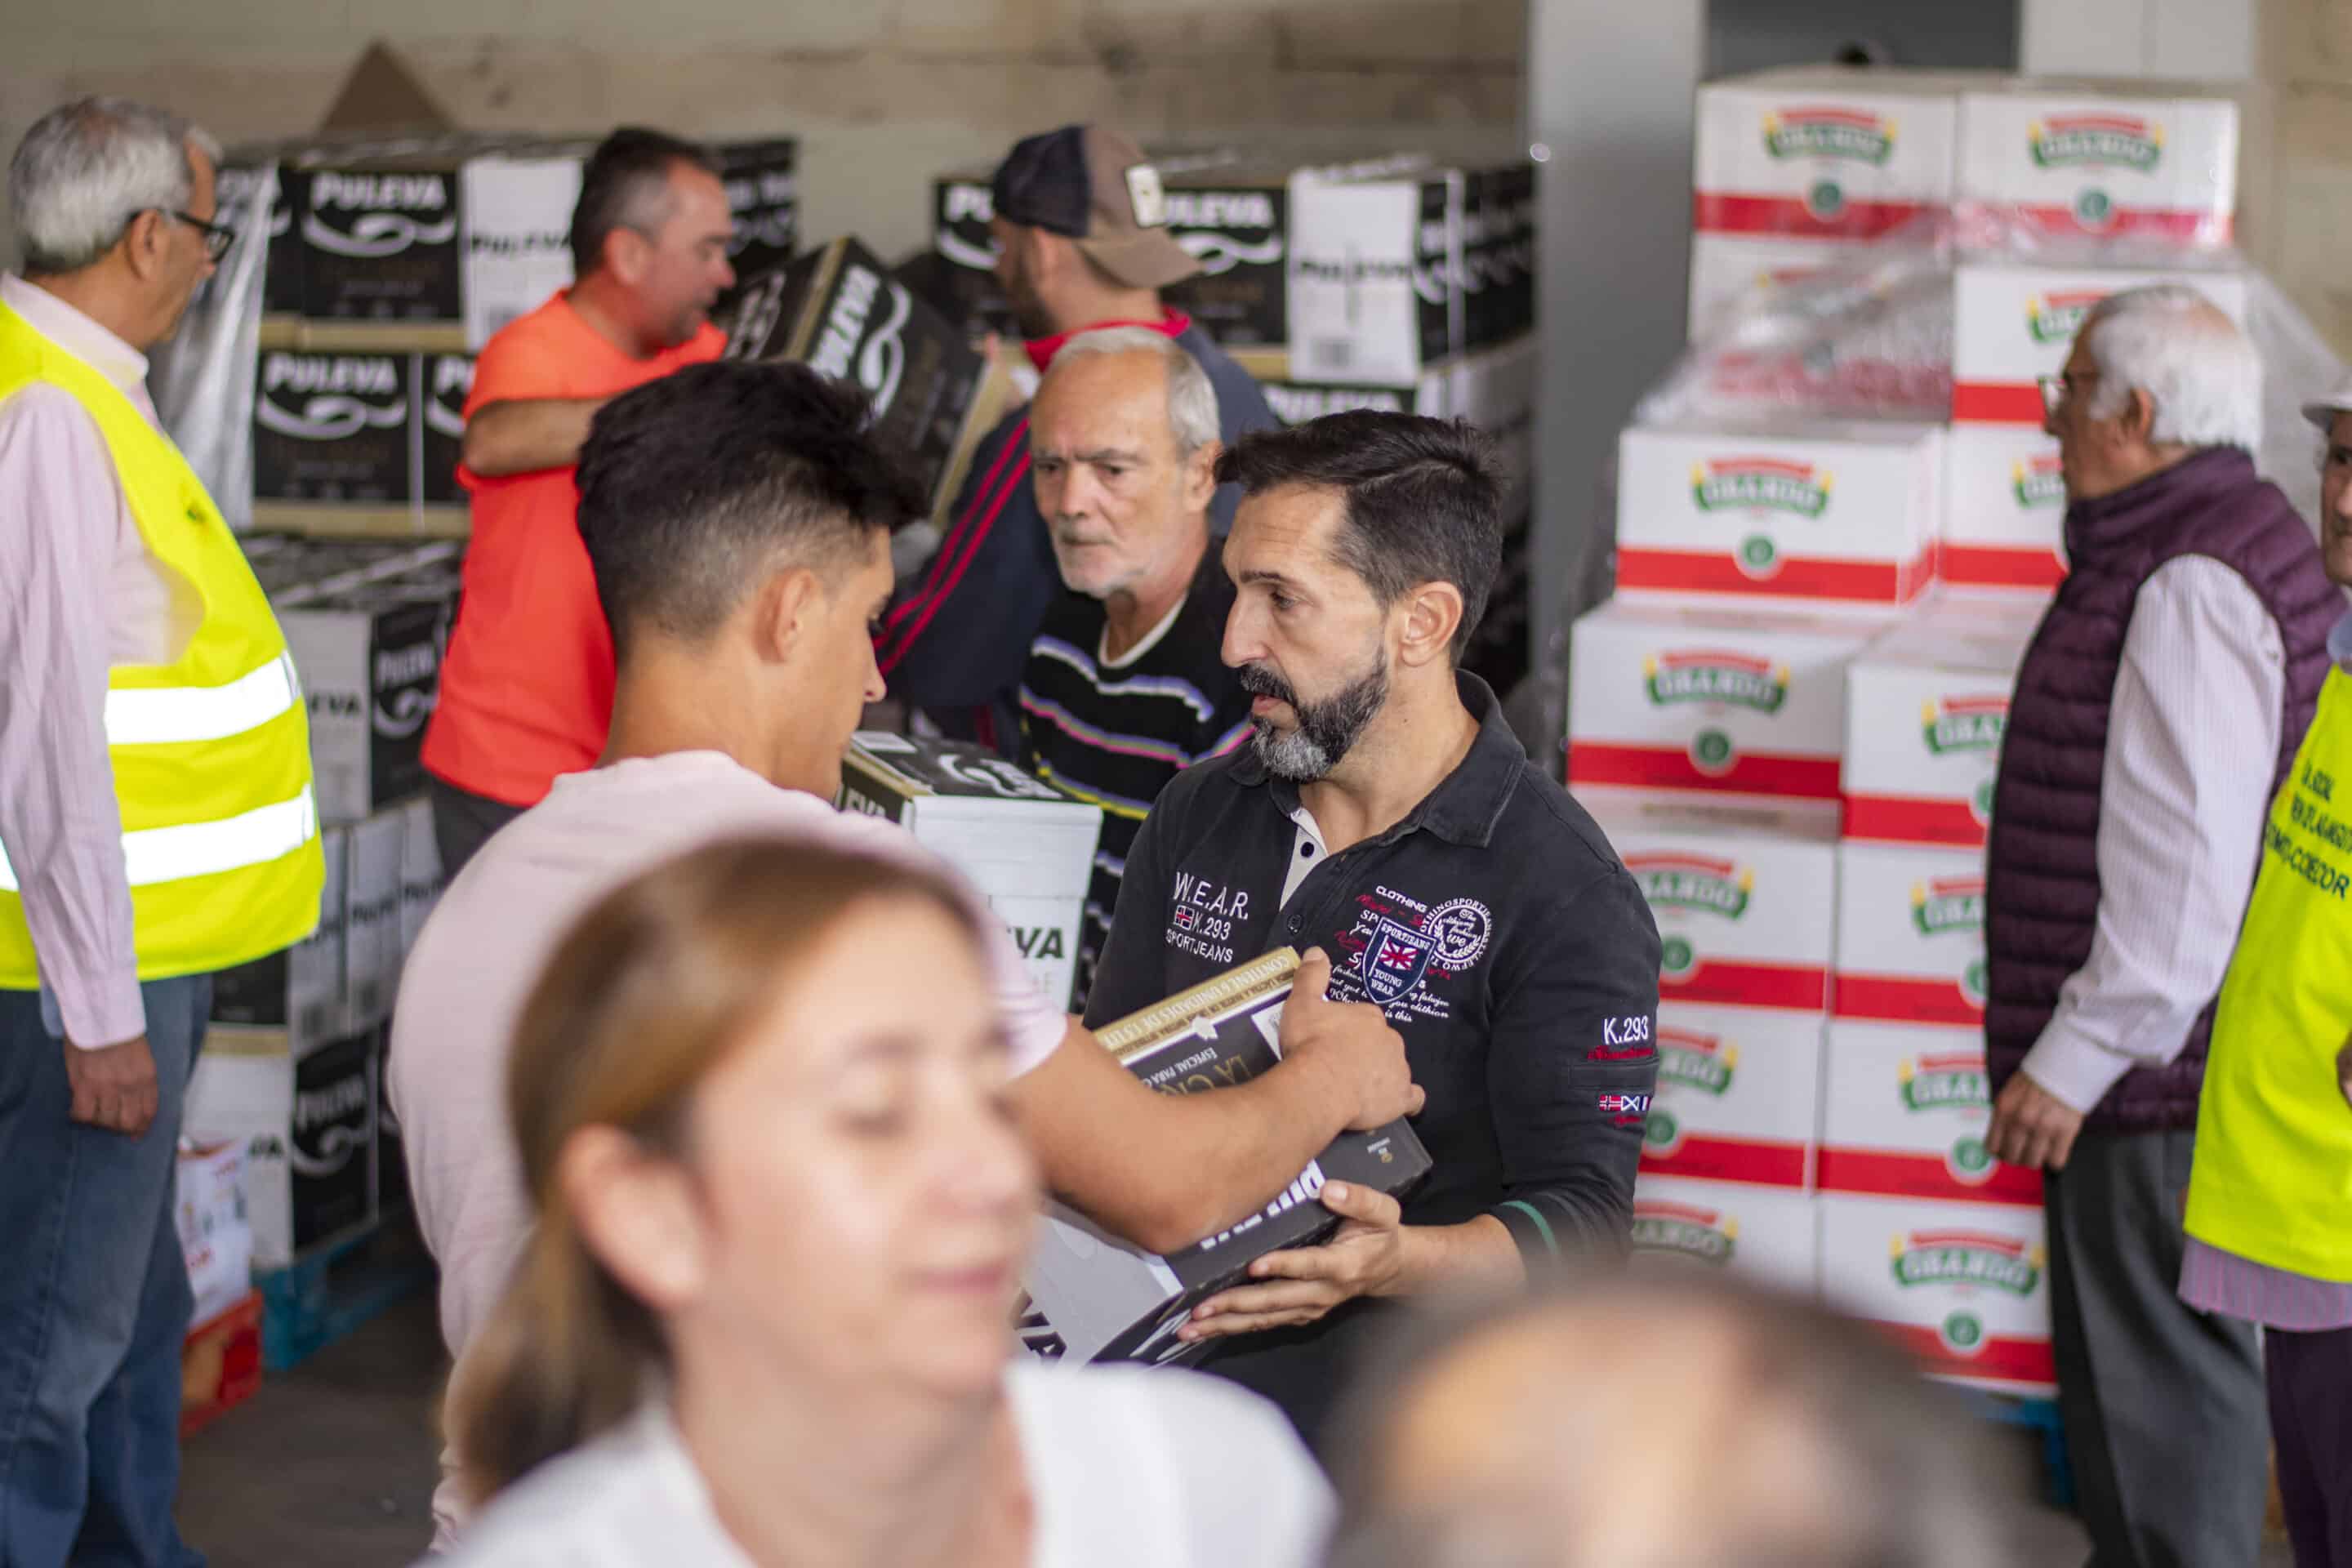 Andaluces Compartiendo, impulsado por LANDALUZ, Fundación Cajasol y la Fundación ‘la Caixa’, ha realizado una donación de alimentos para las familias onubenses.